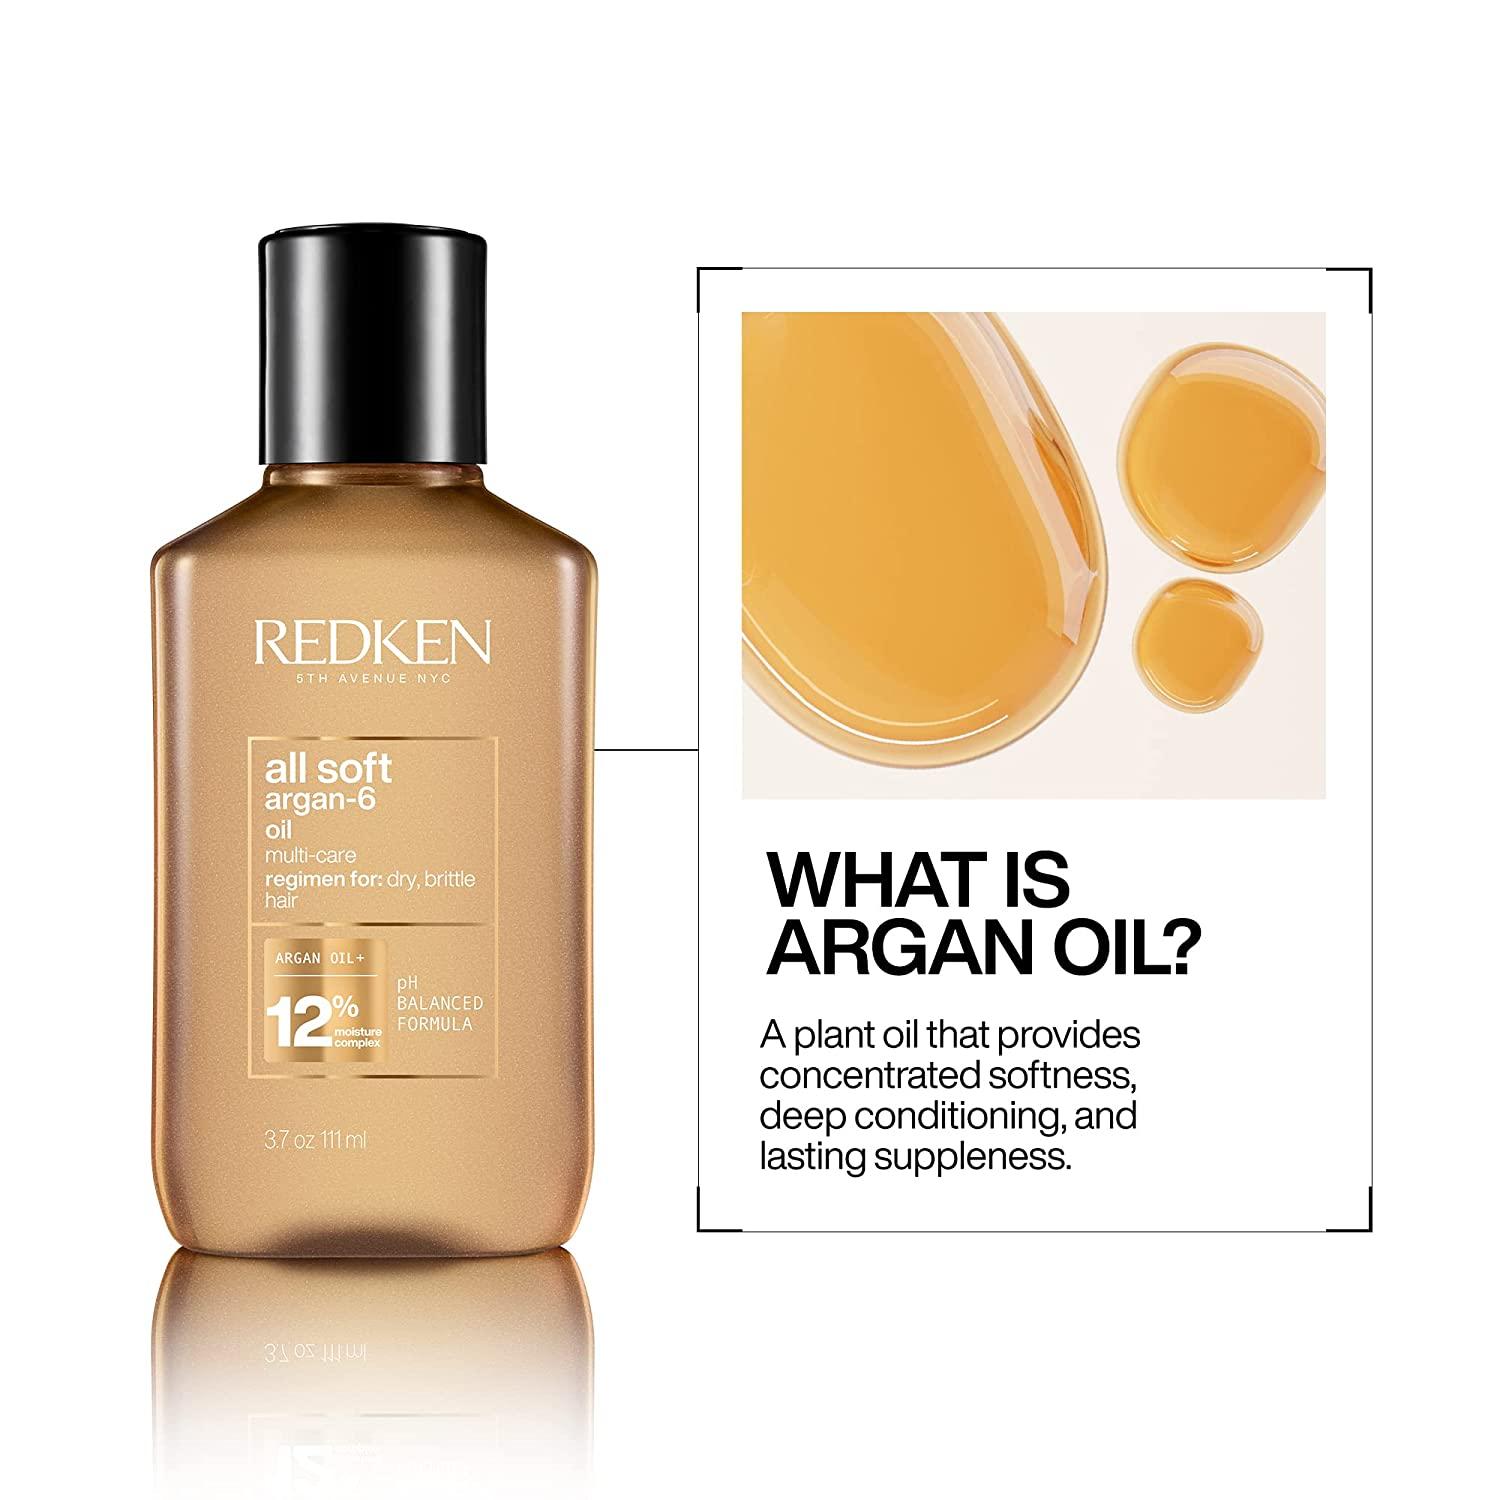 Redken All Soft Argan-6 Oil for Dry Hair